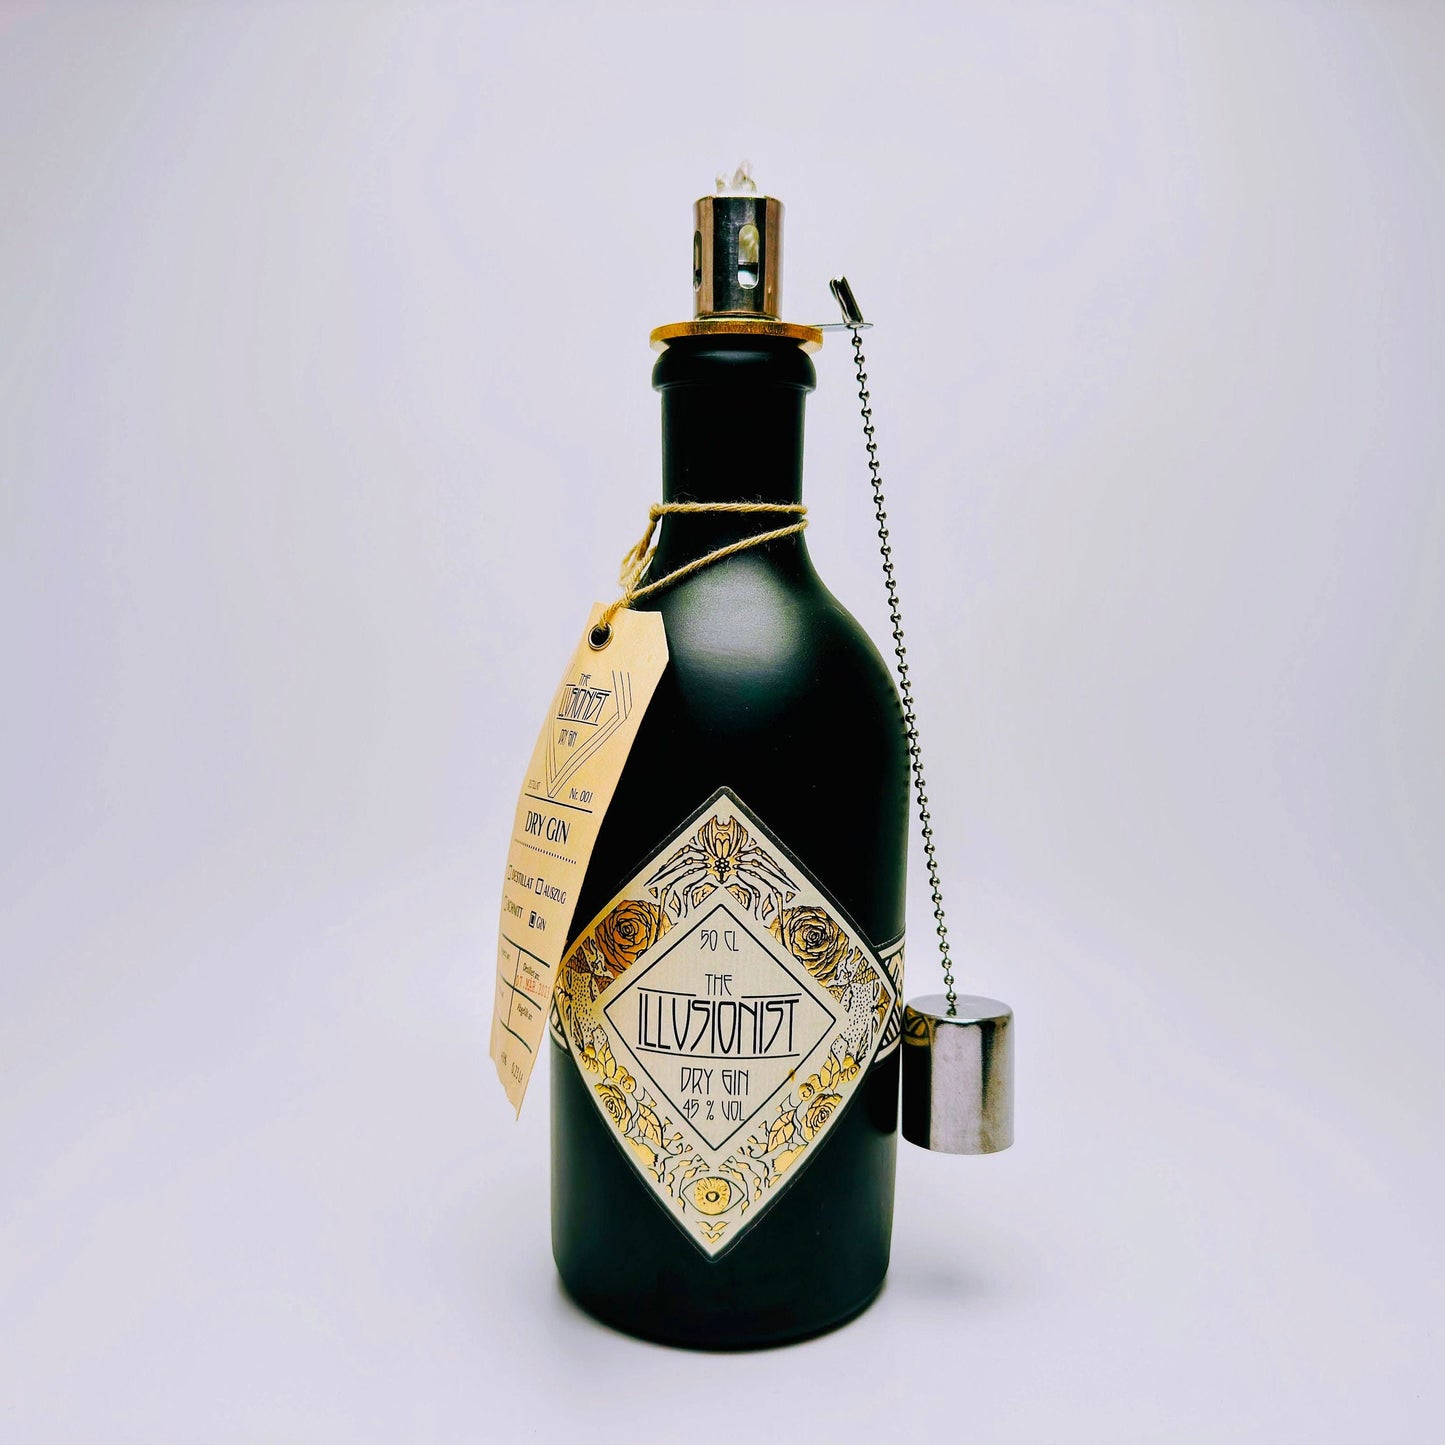 Gin Öllampe "Illusionist" | Handgemachte Öllampe aus Illusionist Gin Flaschen | Upcycling | Handgefertigt | Individuell | Geschenk | Deko